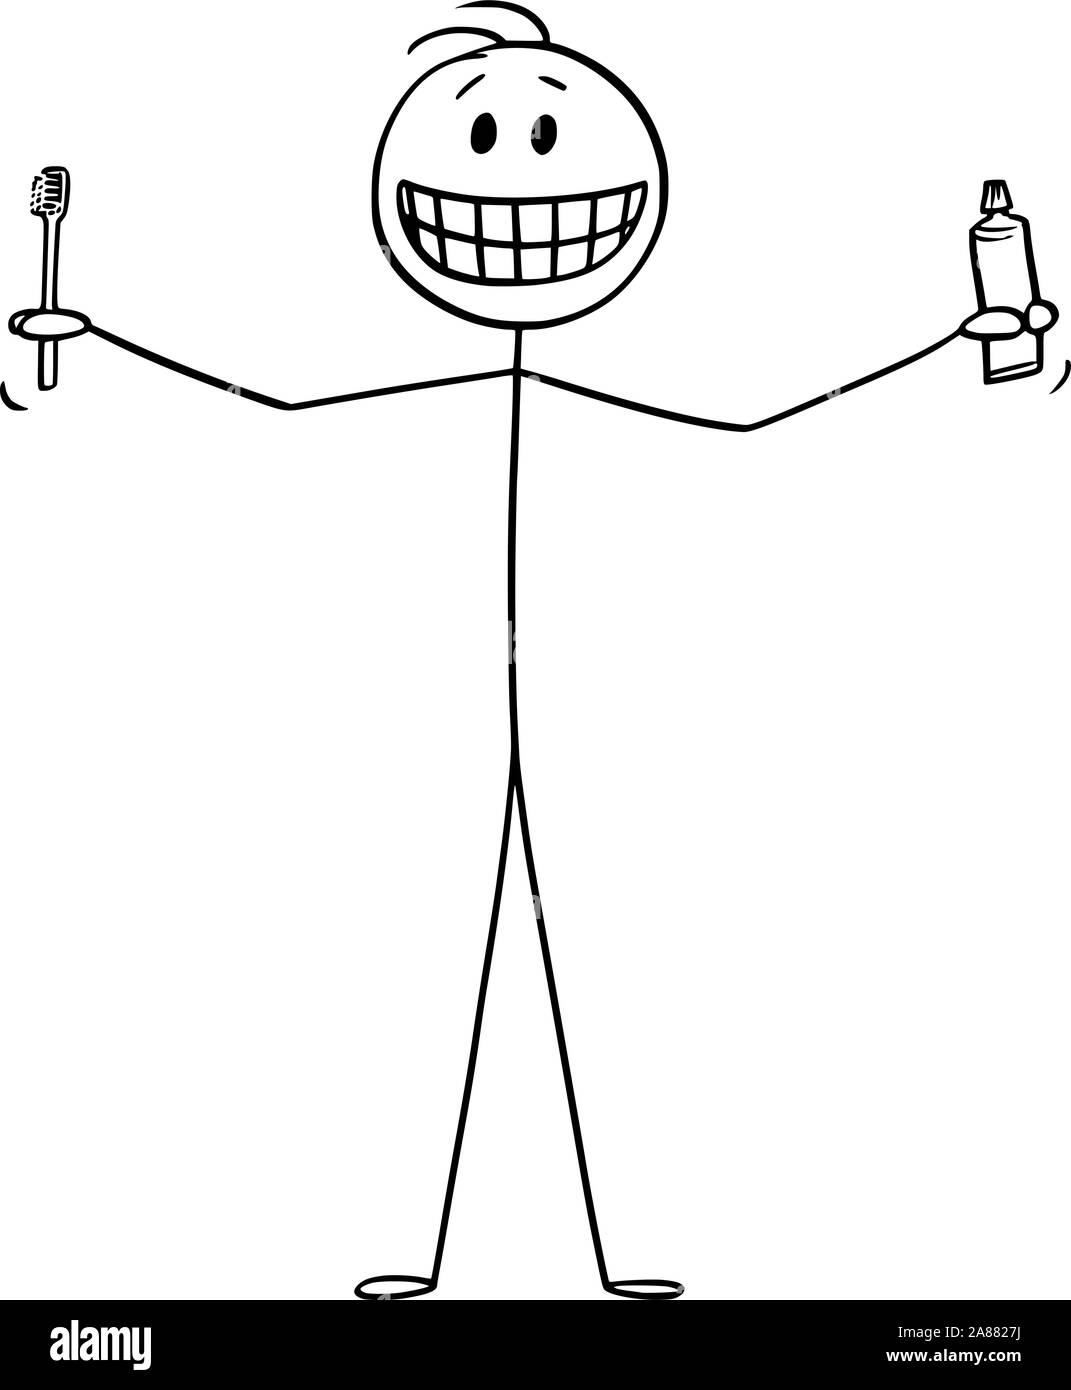 Vector cartoon stick figure dessin illustration conceptuelle de smiling man montrant ses dents, et tenant une brosse à dents ou une brosse à dents et dentifrice dentifrice ou dans les mains. Illustration de Vecteur